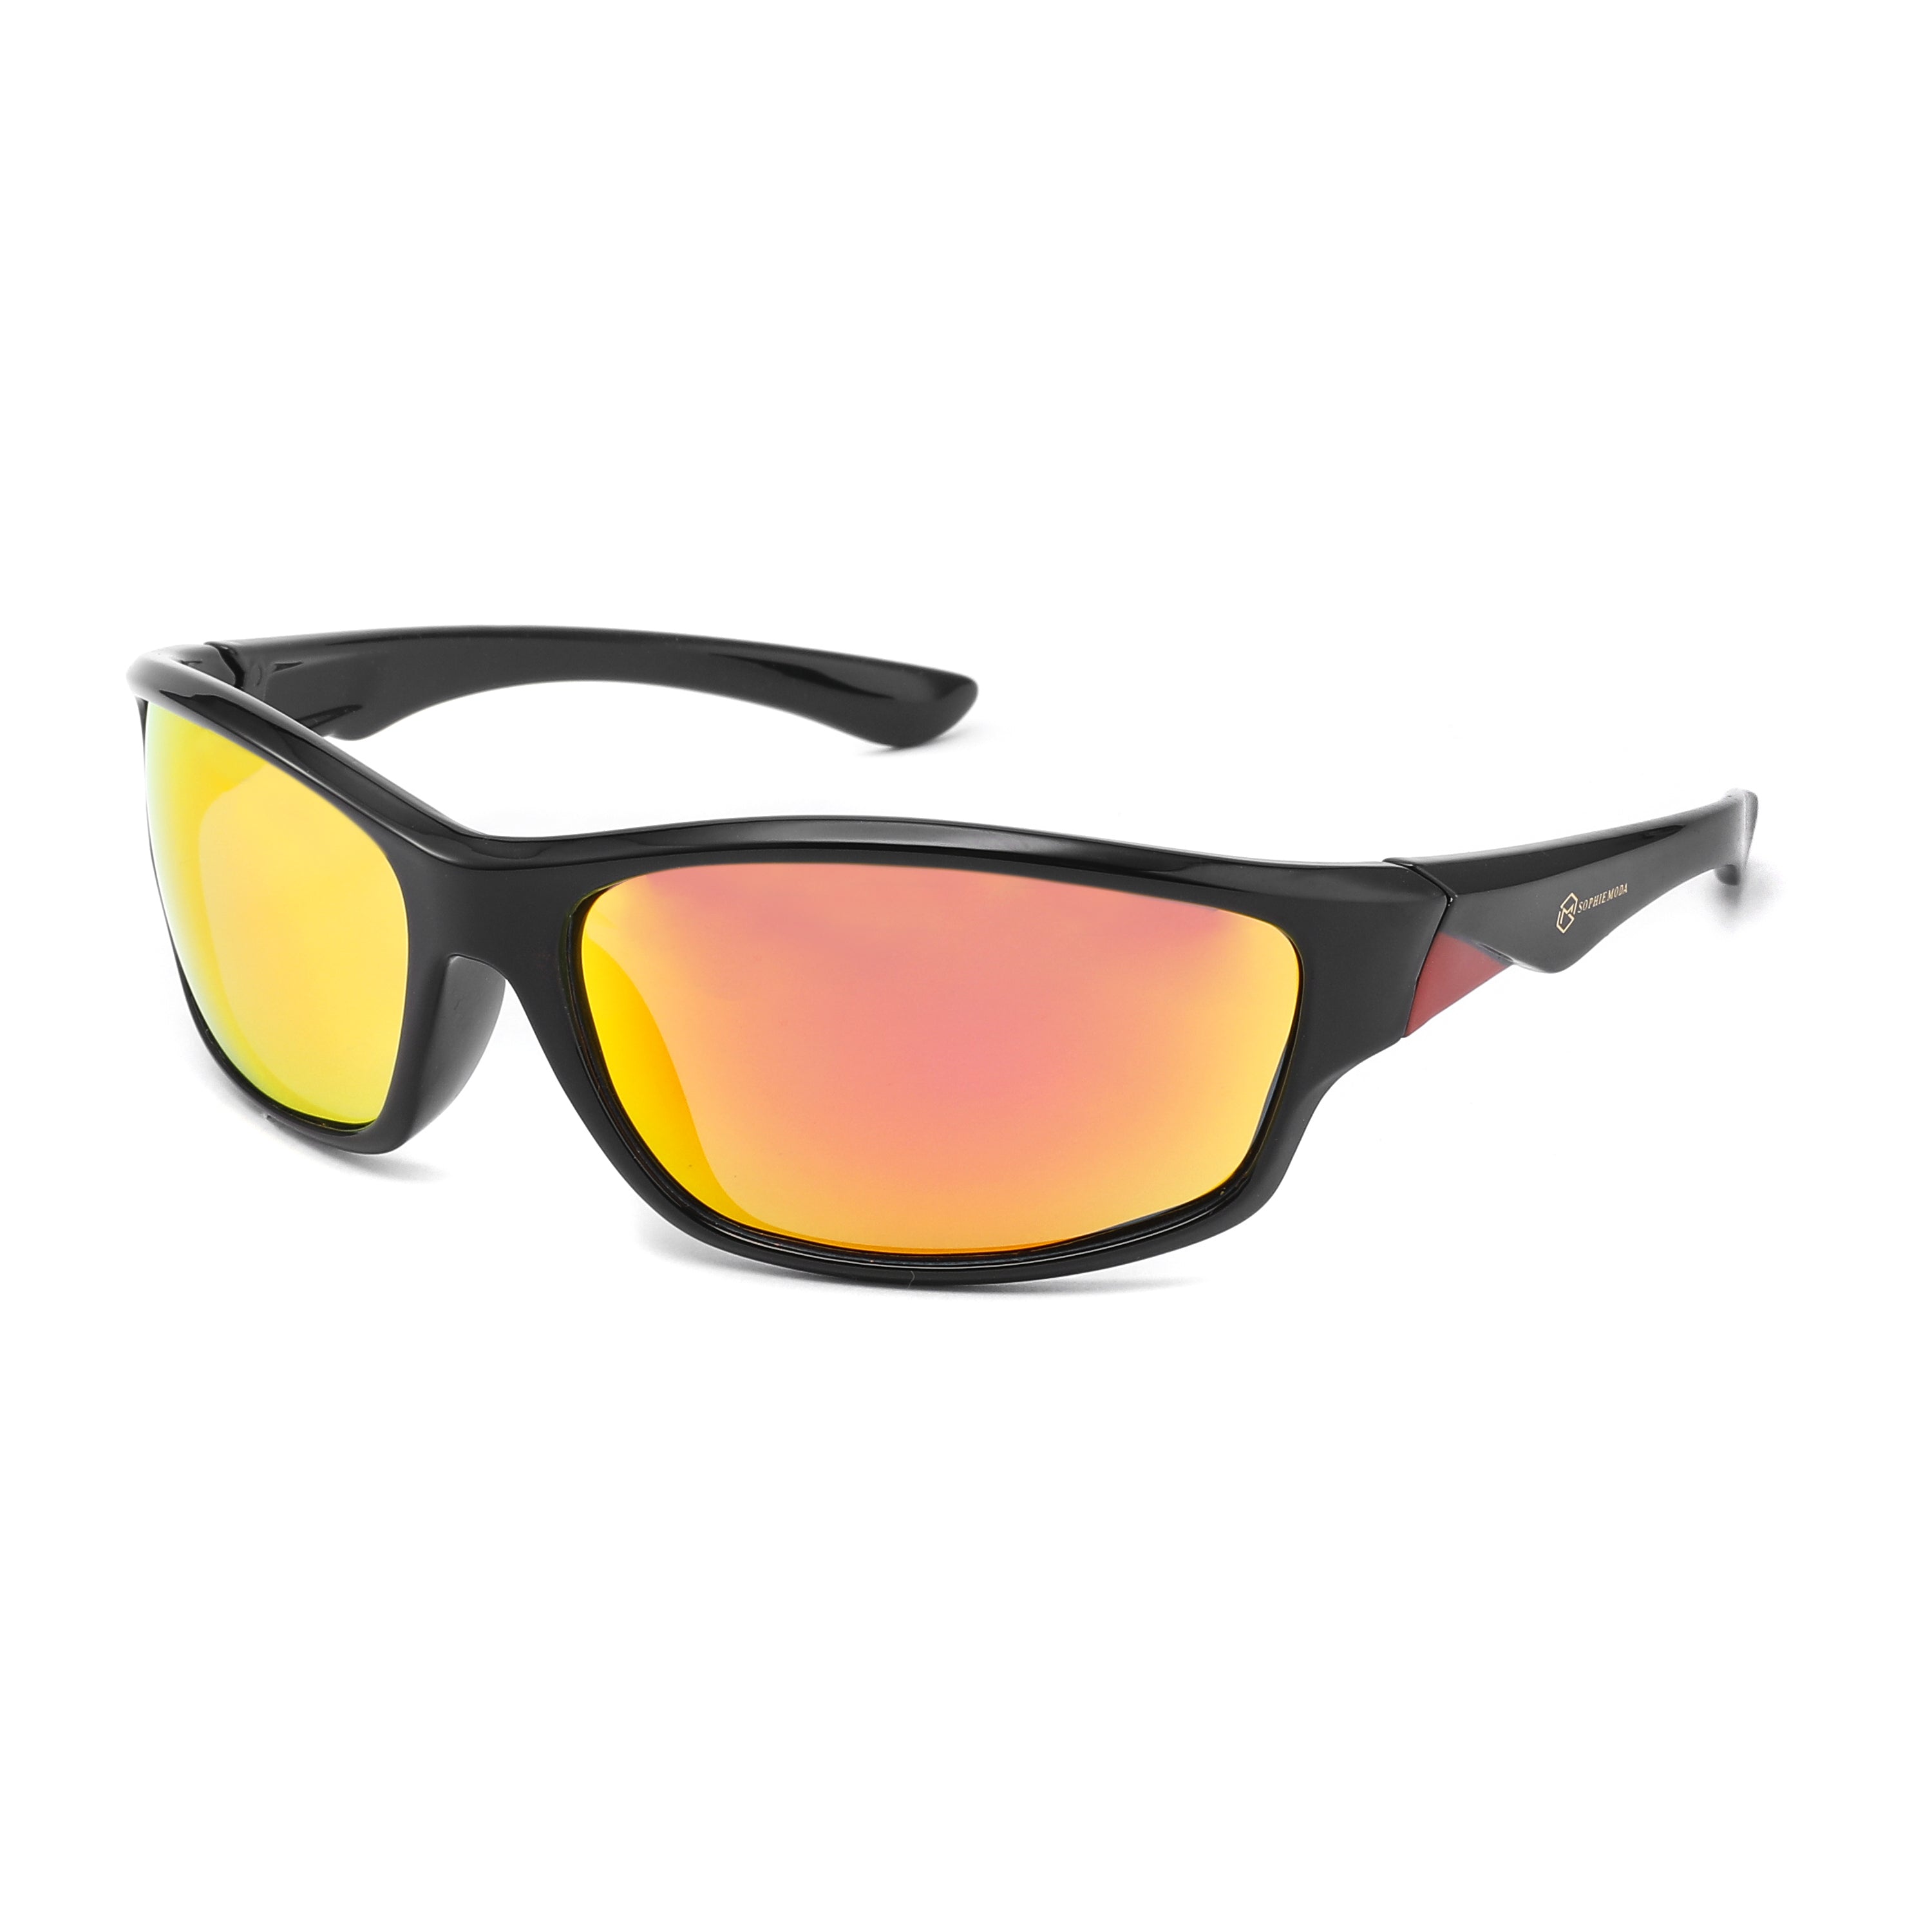 Sunglasses: Revo Polarised